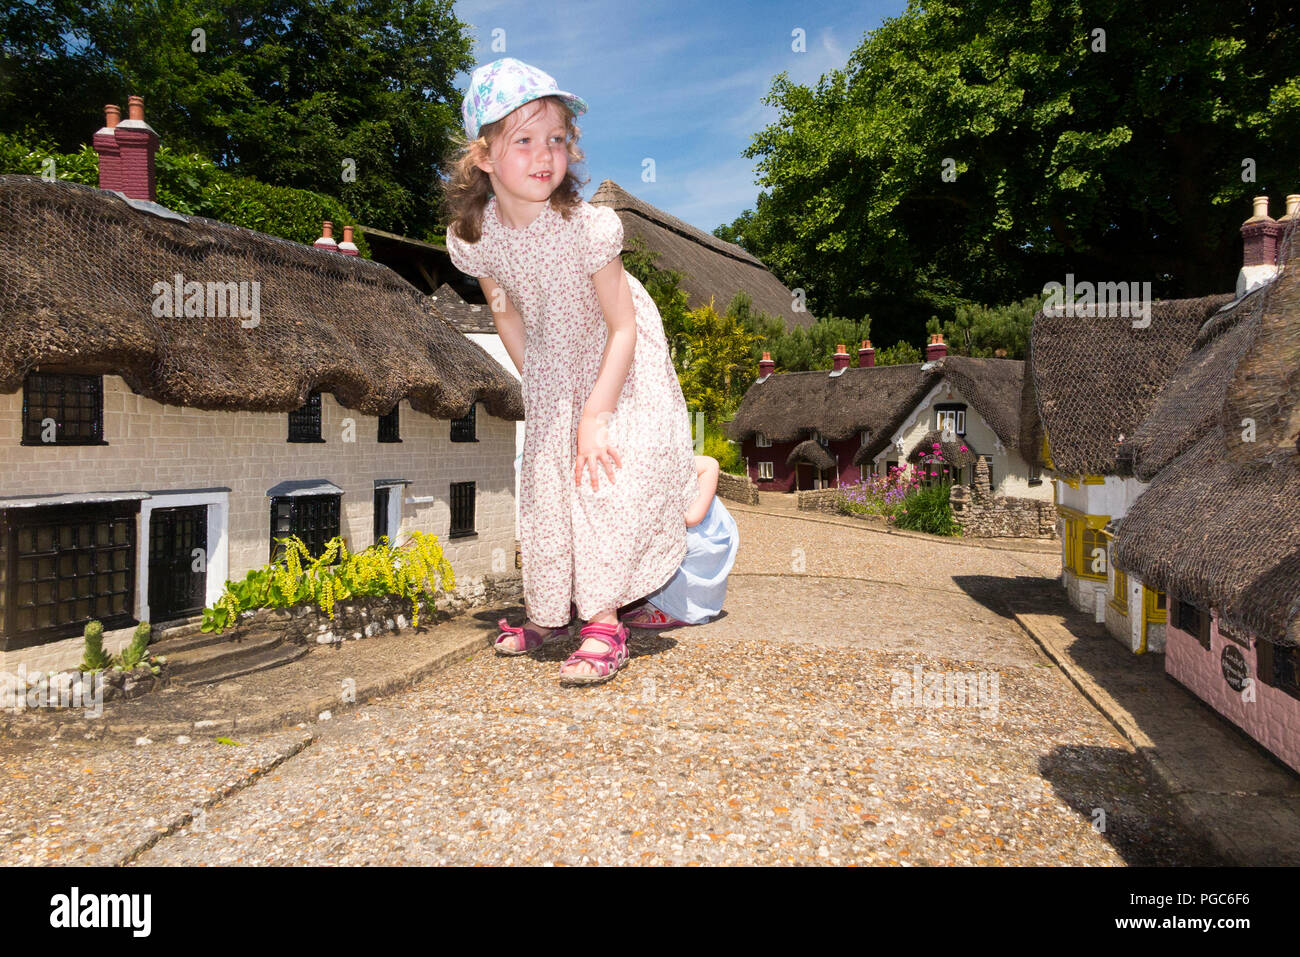 Ragazza / ragazze / bambino / bambini / bambino / bambini di esplorare il modello del villaggio a Godshill sull'Isola di Wight, in una giornata di sole con cielo blu / cieli. Regno Unito (101 Foto Stock